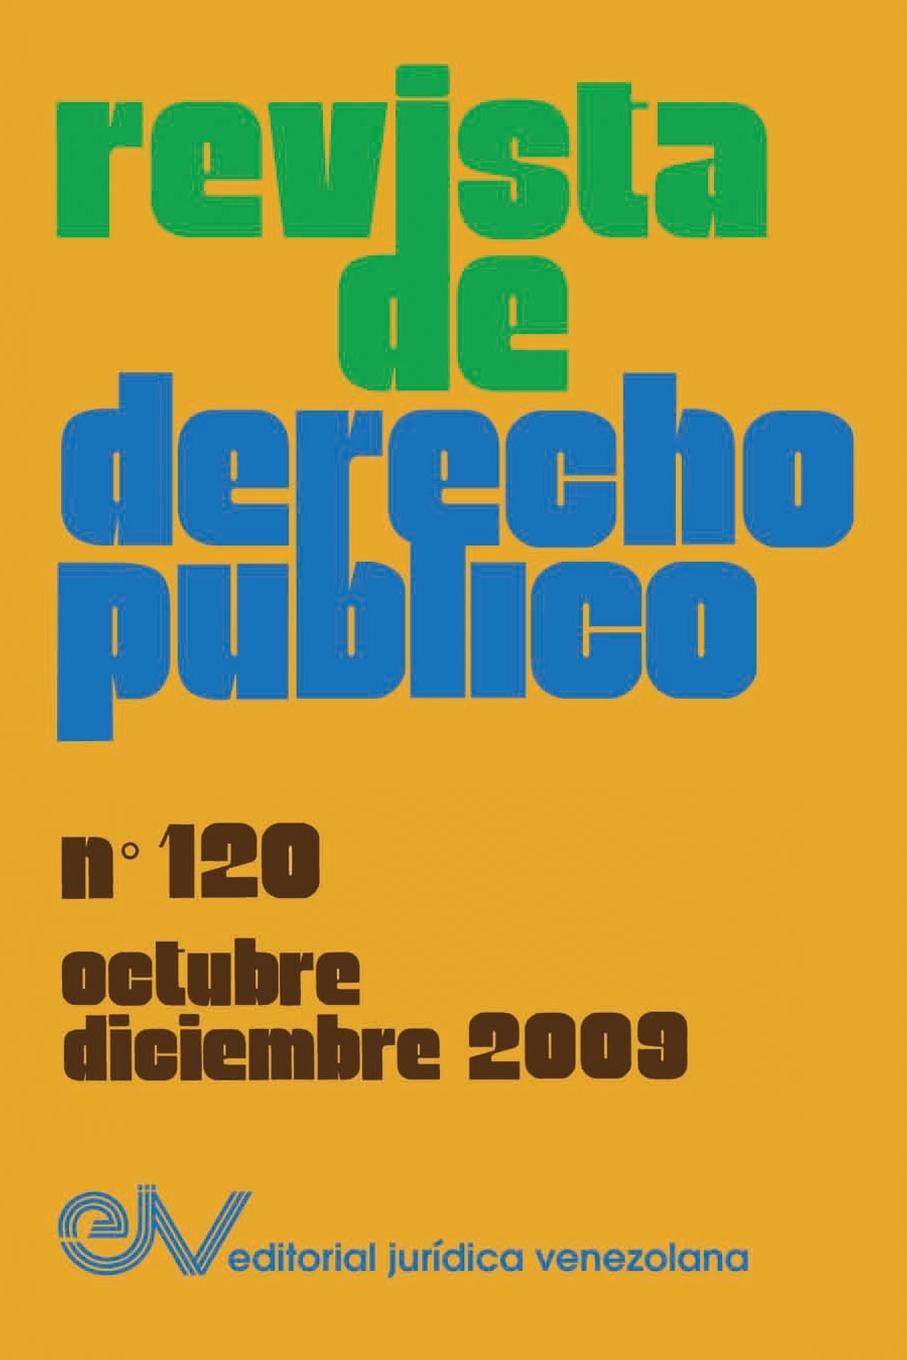 Kniha REVISTA DE DERECHO PUBLICO (Venezuela), No. 120, octubre-diciembre 2009 